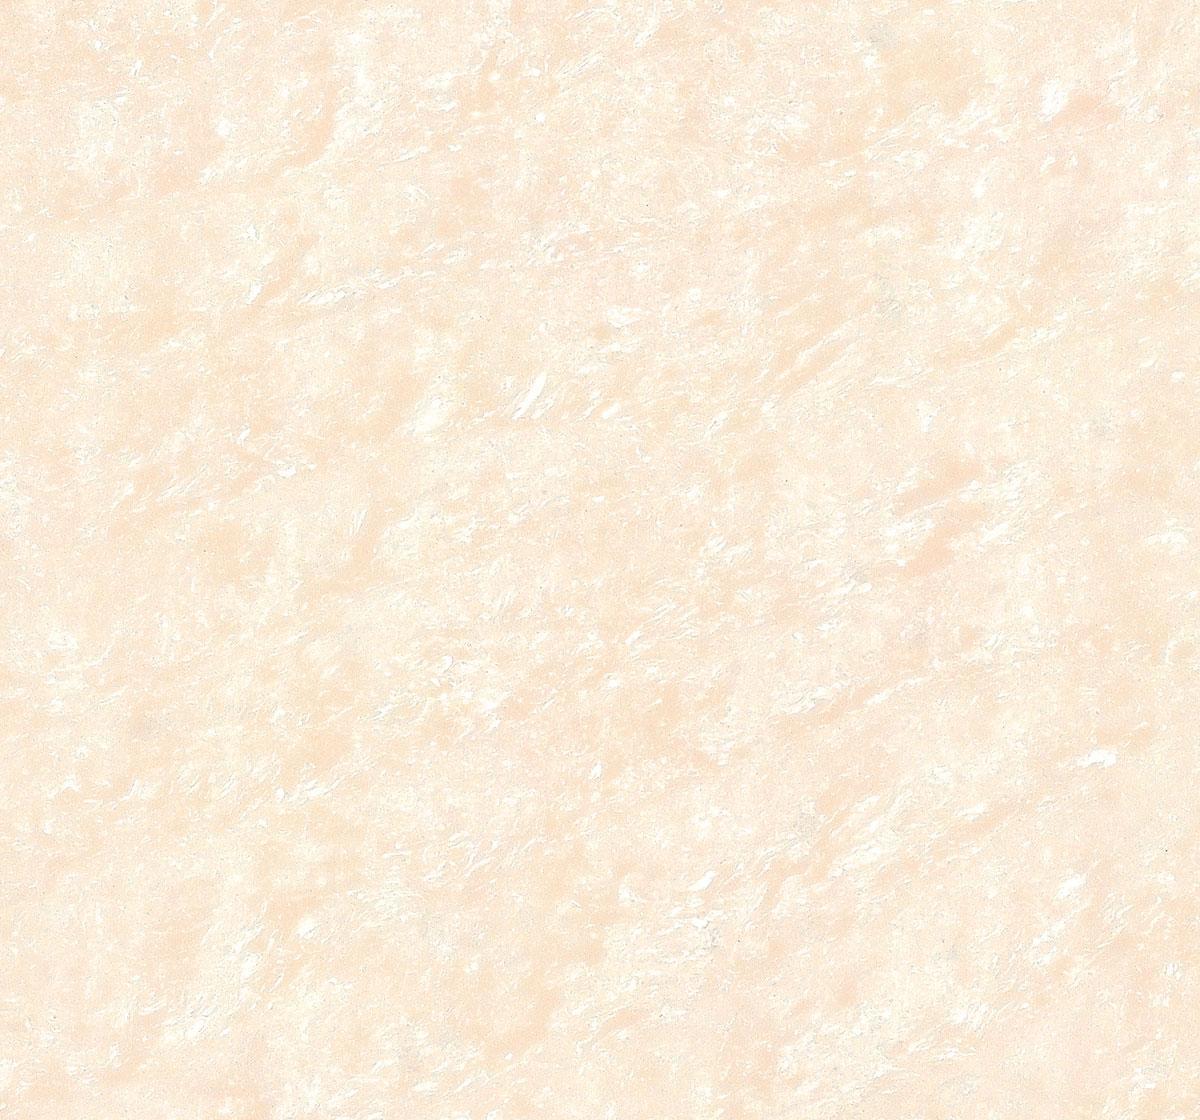 格莱斯枫丹白露系列LW30804地面玻化砖产品价格_图片_报价_新浪家居网